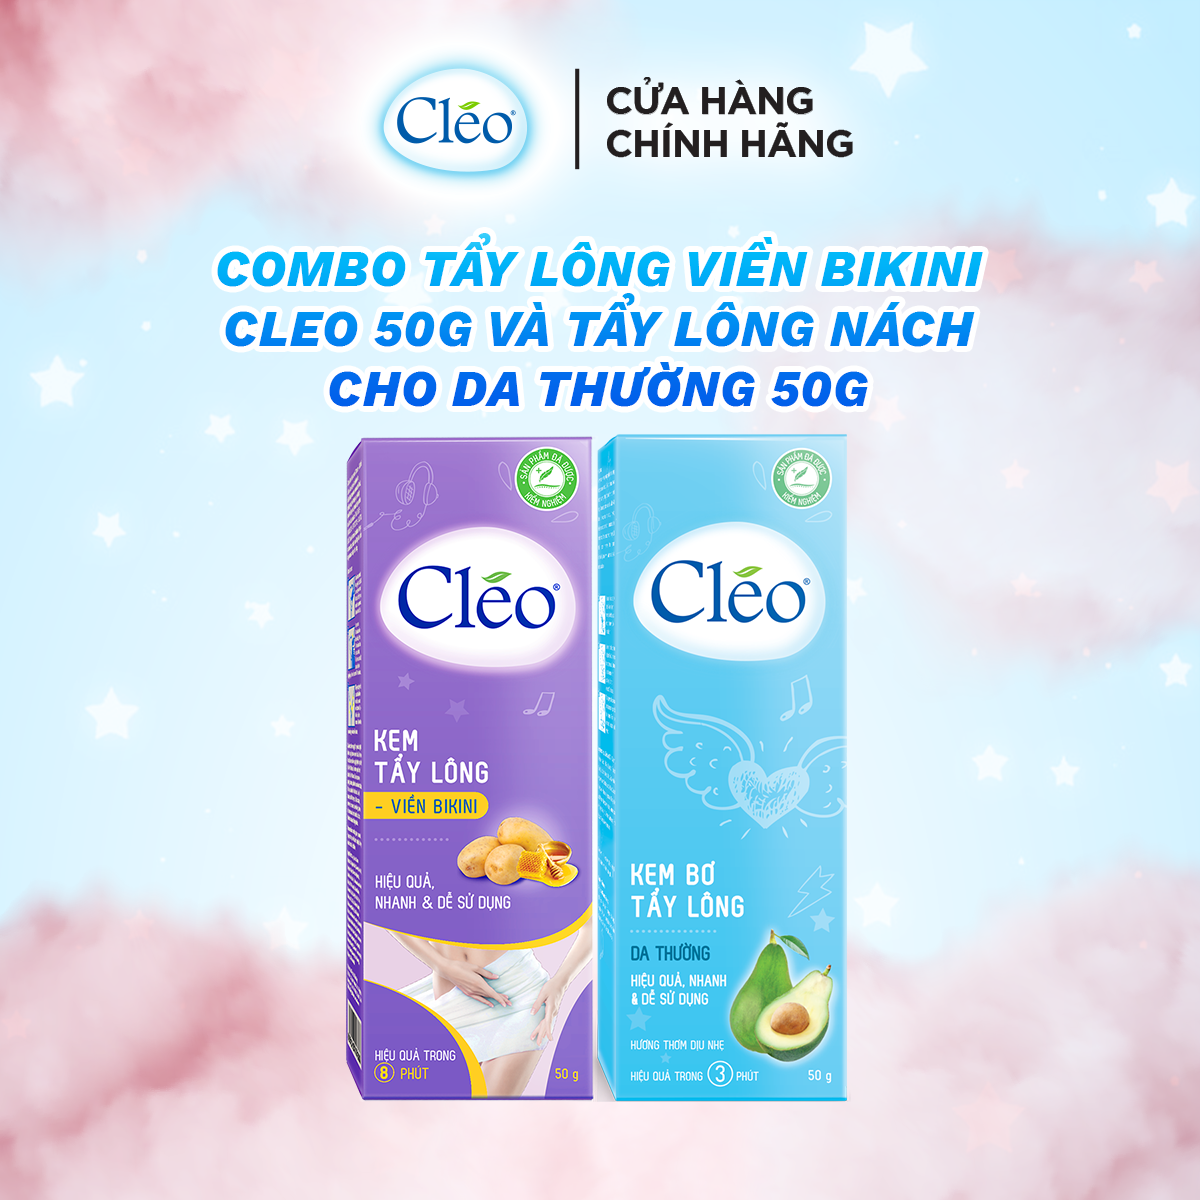 Combo tẩy lông Bikini Cléo, an toàn, không đau rát, hiệu quả trong 8 phút 50g và tẩy lông nách Cléo cho da thường 50g